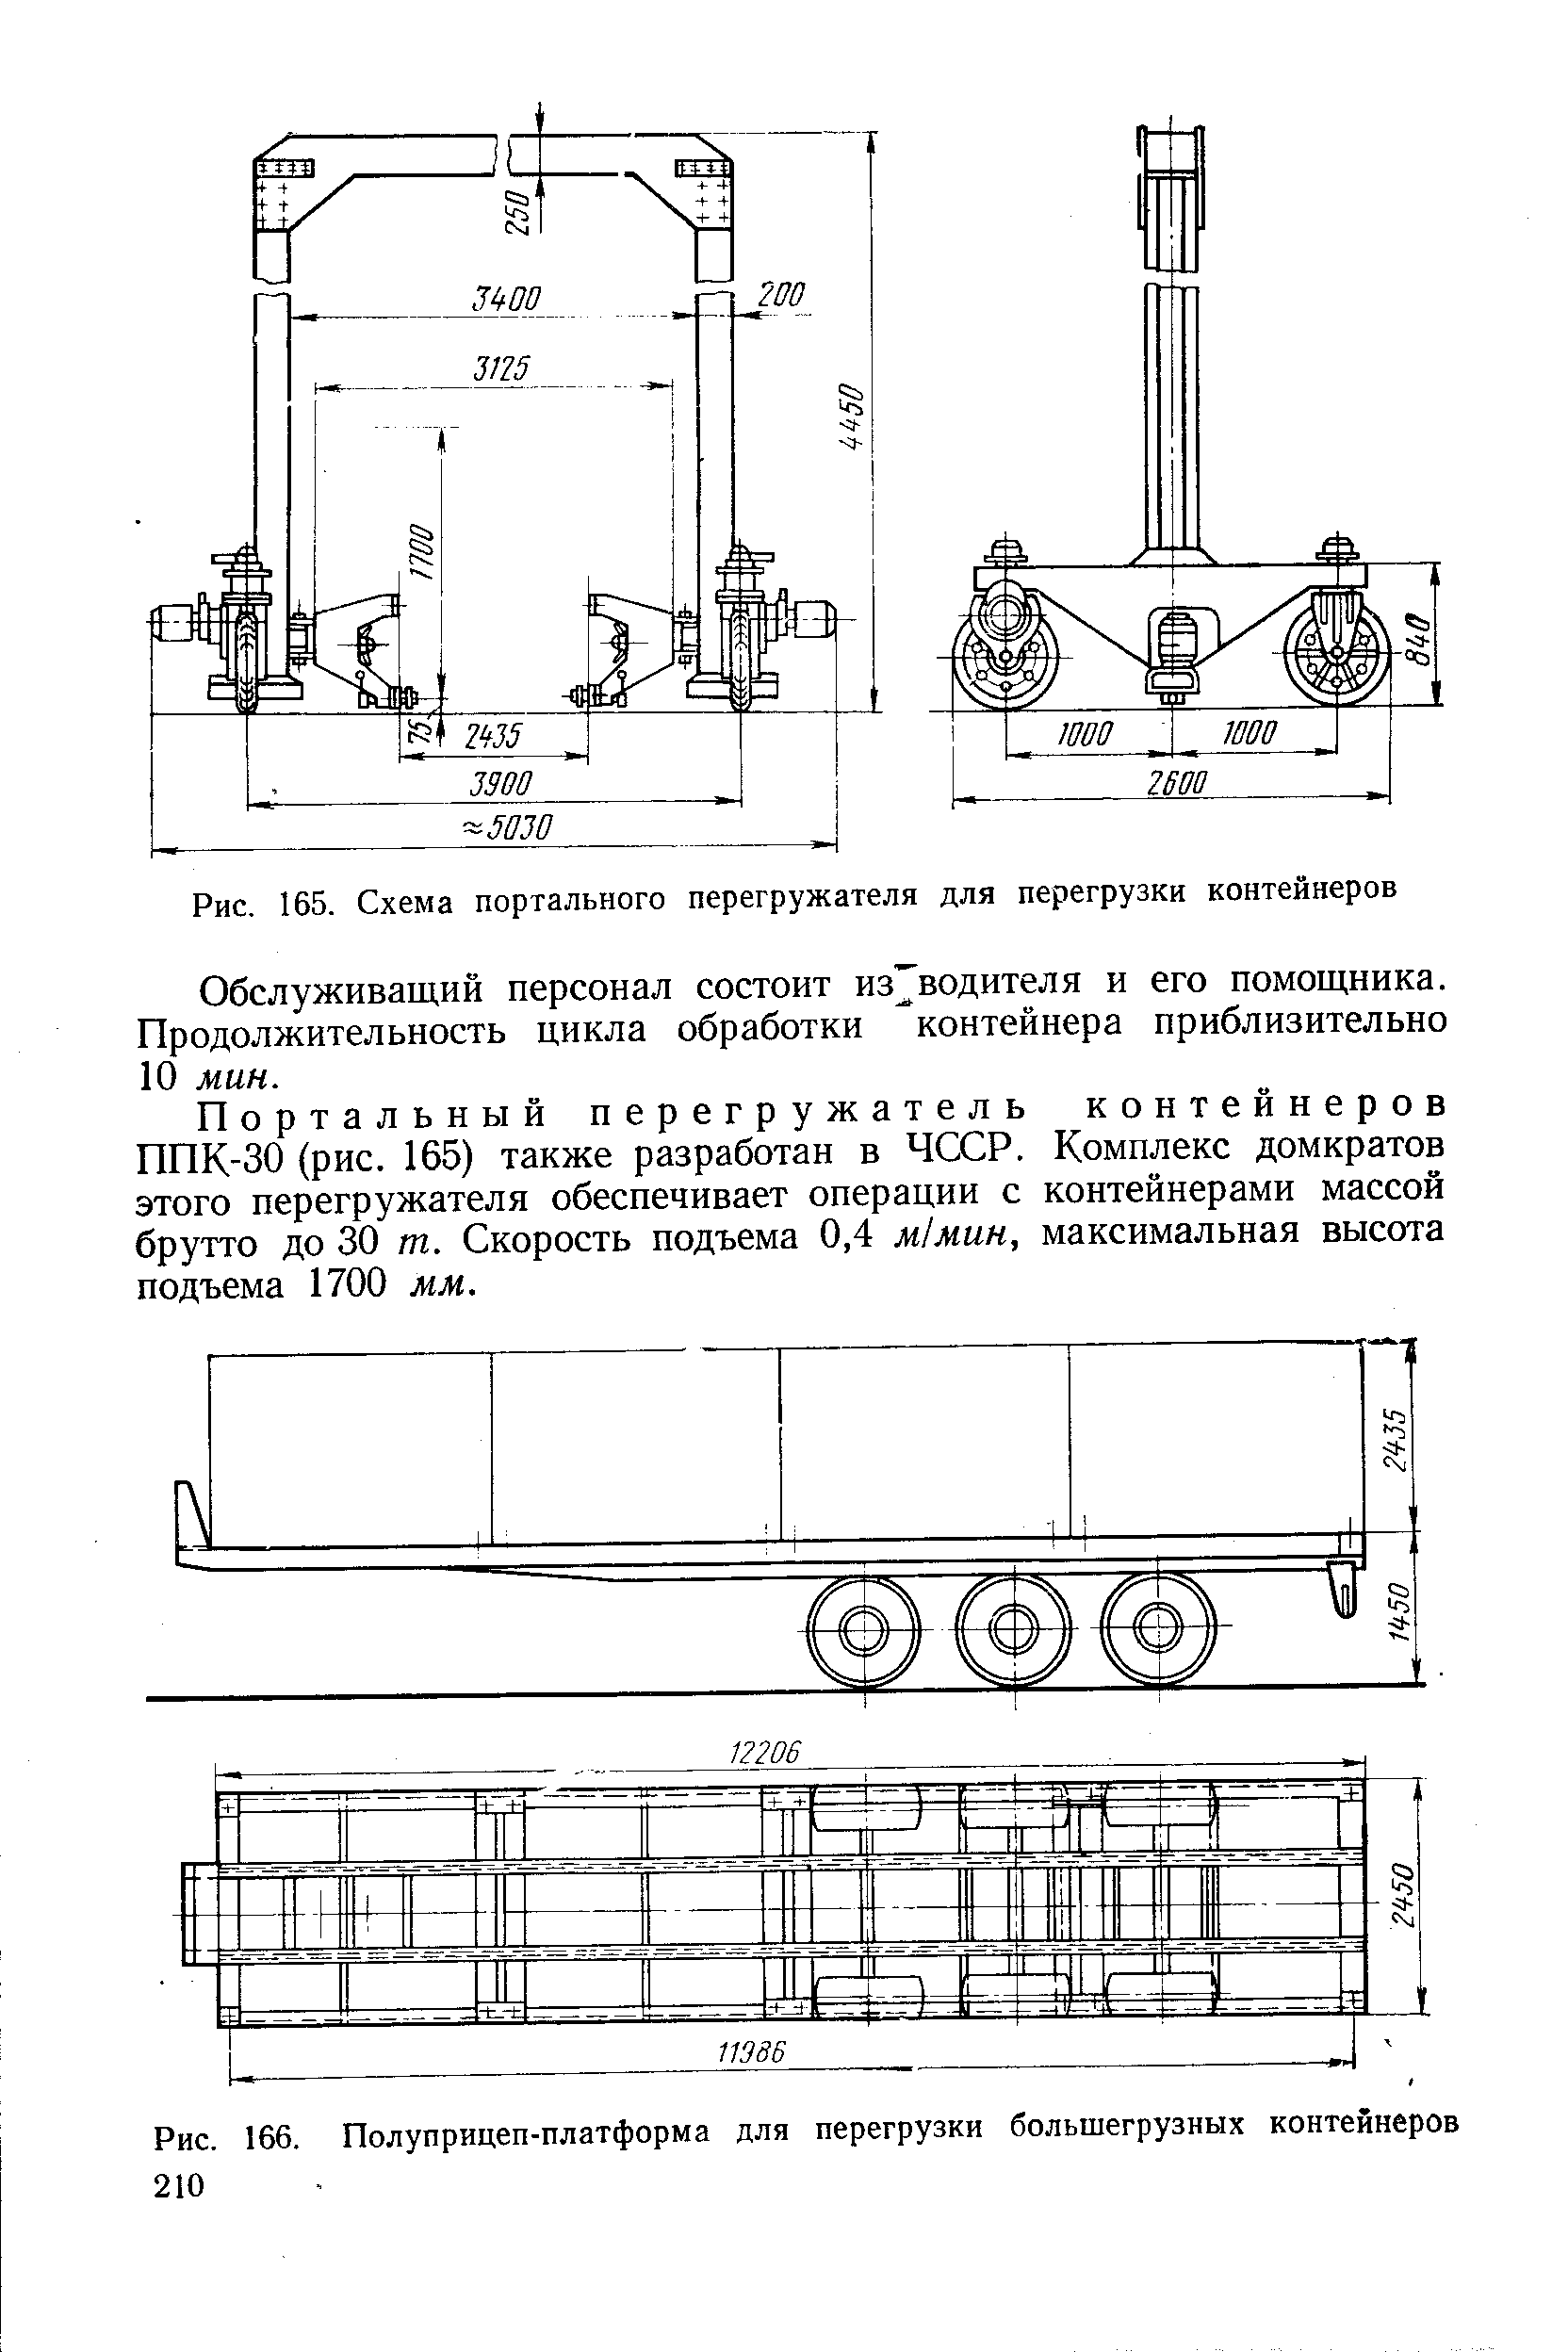 Рис. 166. Полуприцеп-платформа для перегрузки большегрузных контейнеров 210
